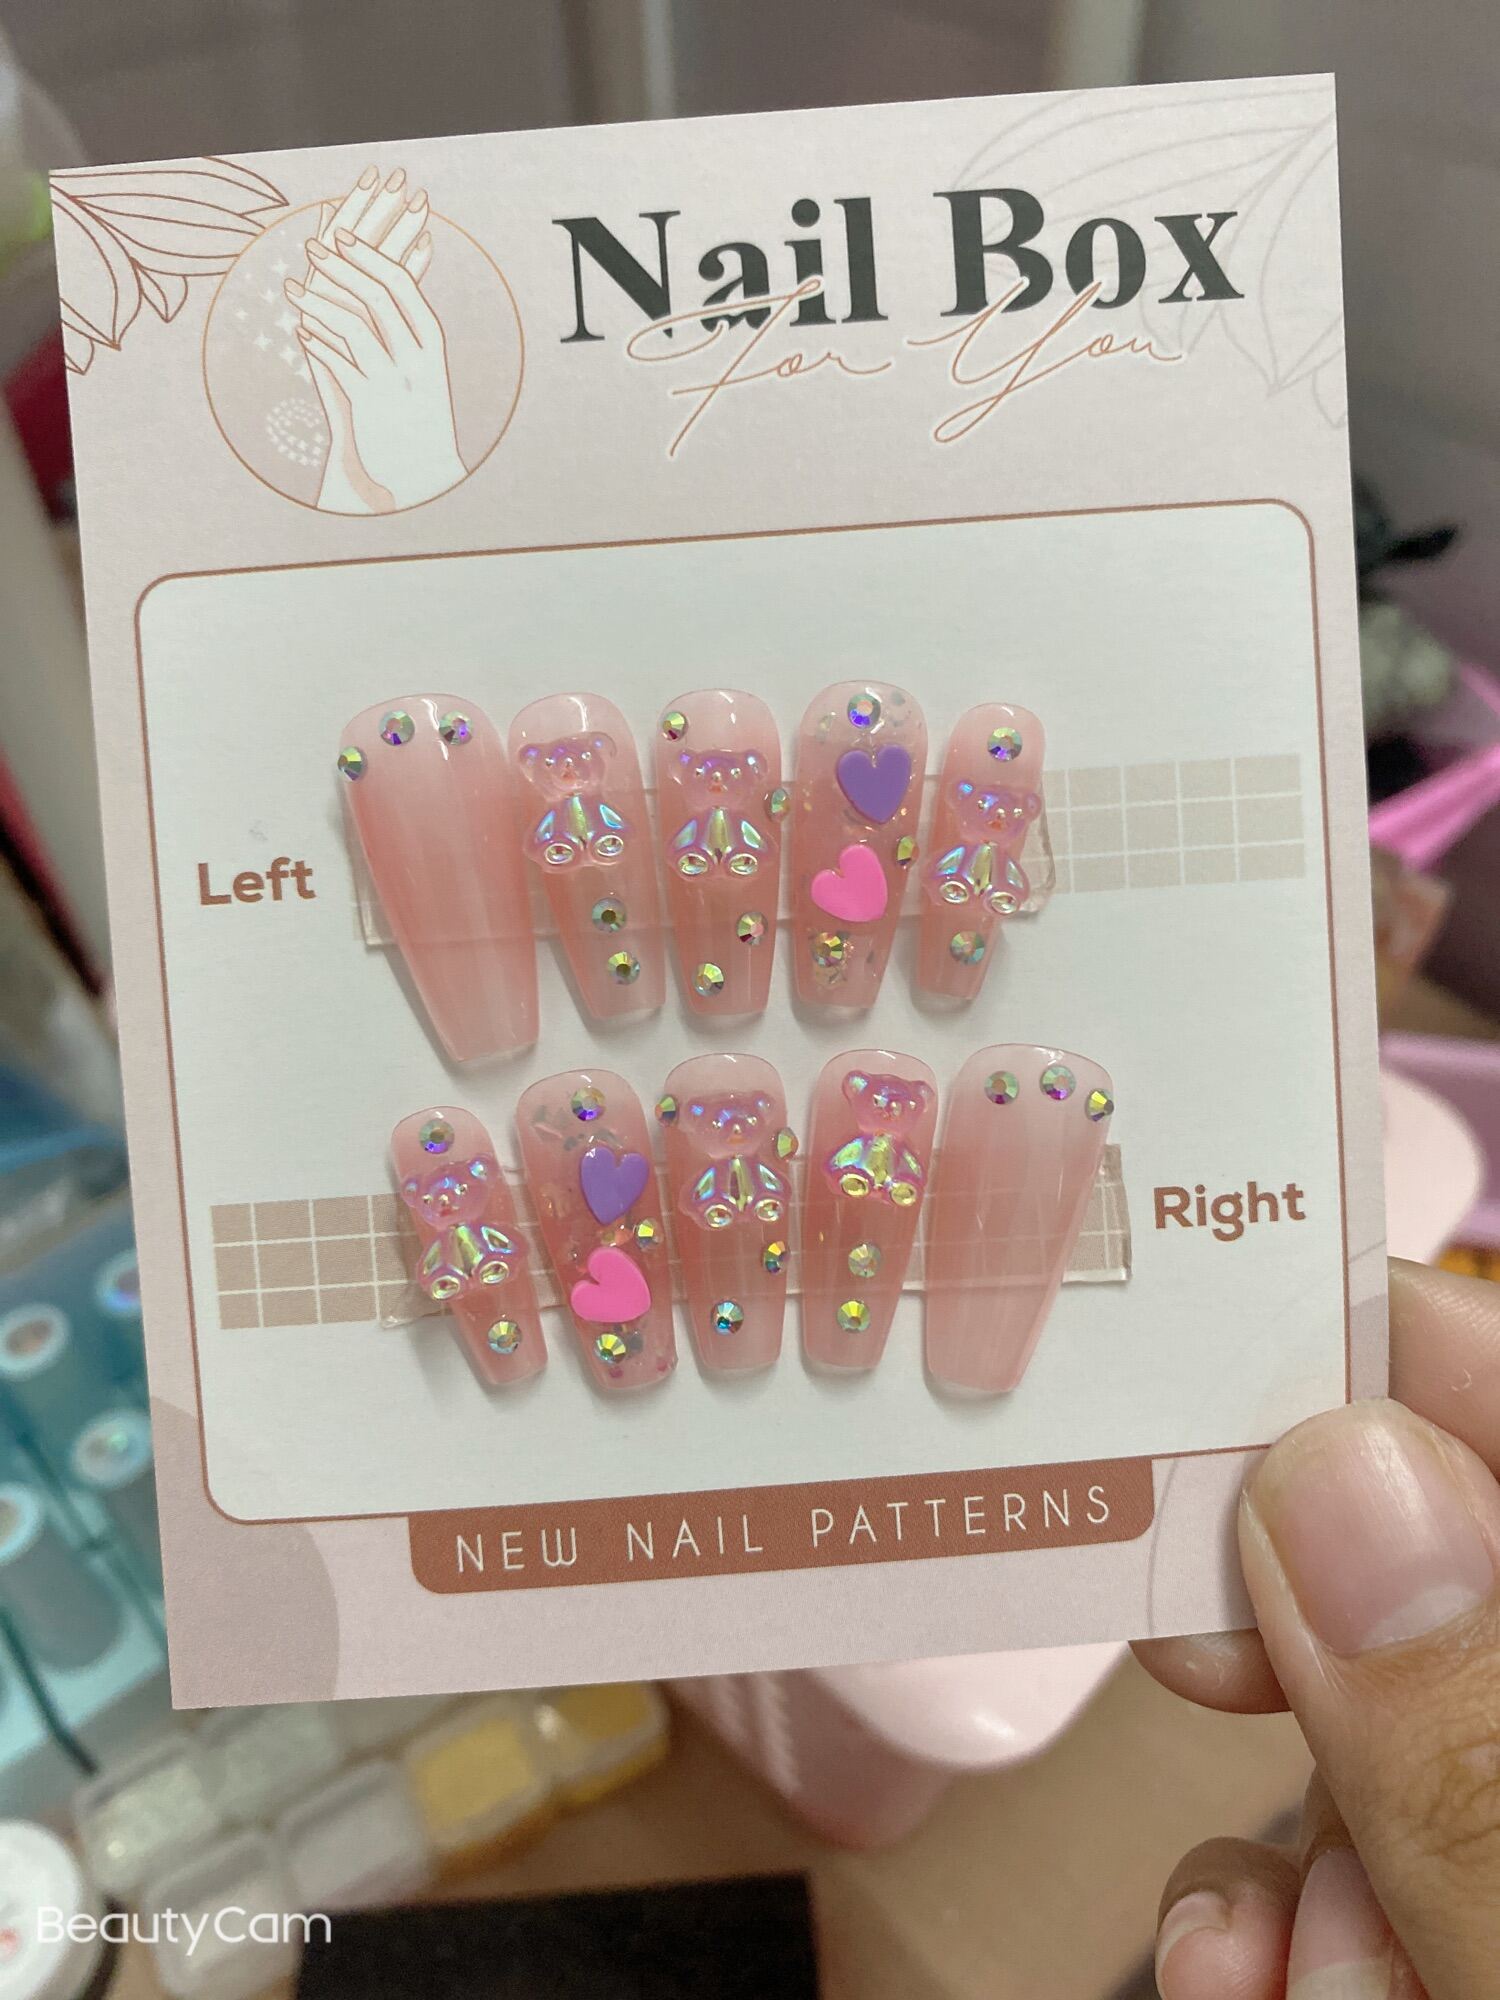 Nếu bạn muốn có một bộ móng tay hoàn hảo và độc đáo, Nailbox thiết kế theo yêu cầu là giải pháp tuyệt vời nhất! Với mẫu nail tone thạch hồng đính charm, bạn sẽ trở nên xinh đẹp và ấn tượng hơn bao giờ hết. Liên hệ ngay với Nailbox để đặt lịch làm móng tay theo ý muốn của bạn!